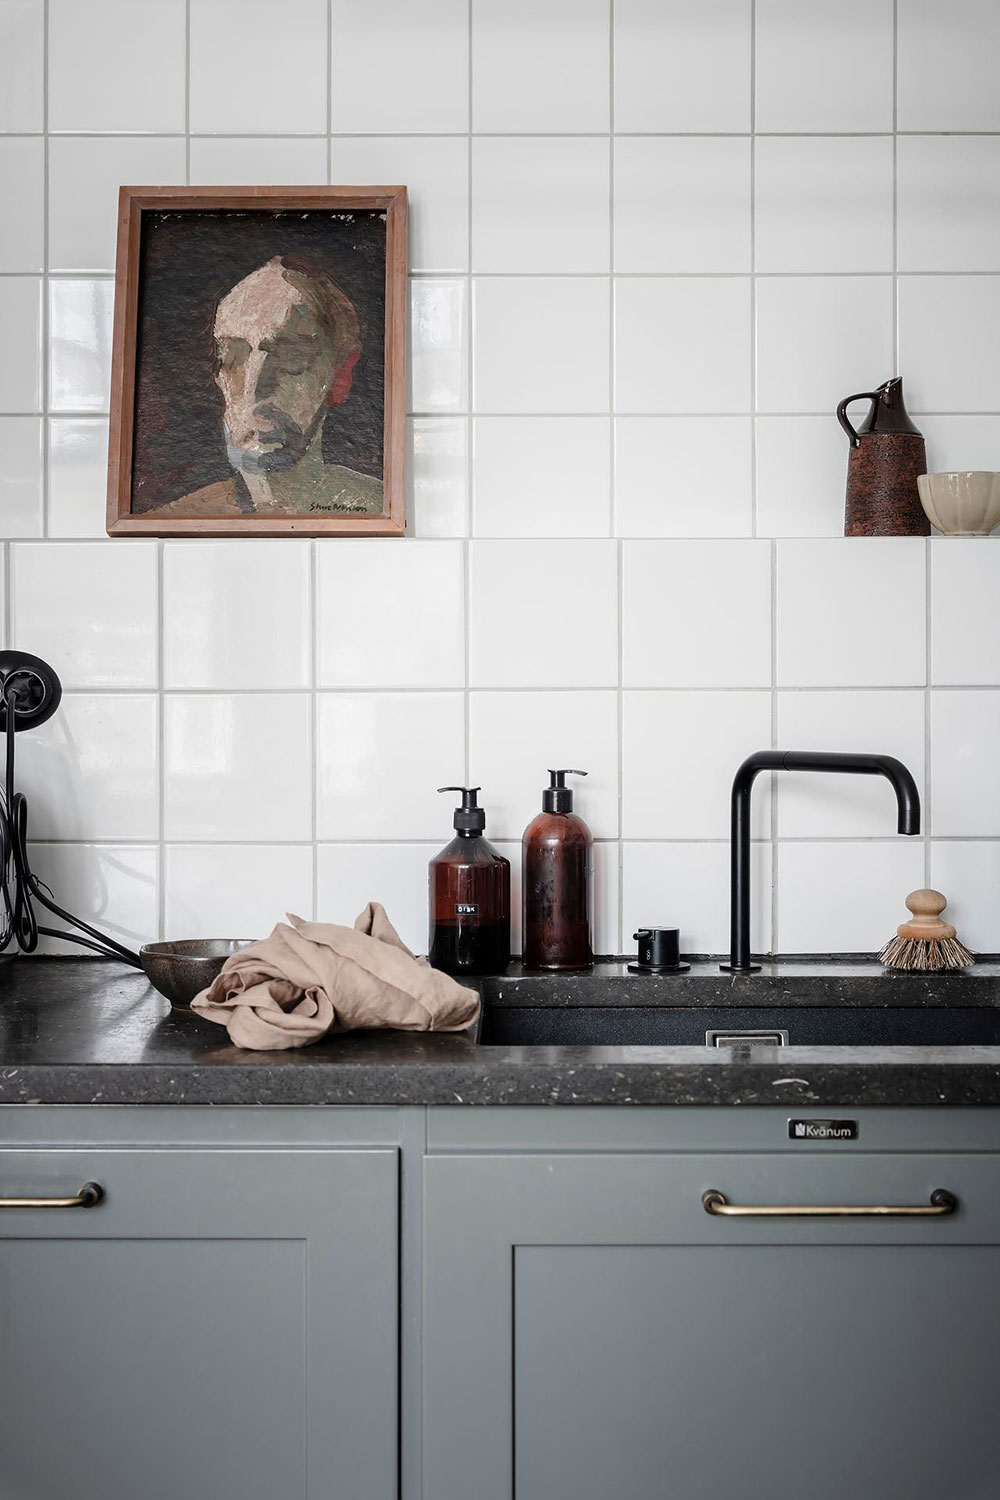 Чёрный пол на кухне и красивые окна: квартира в необычном доме 18 века в Гётеборге (71 кв. м)